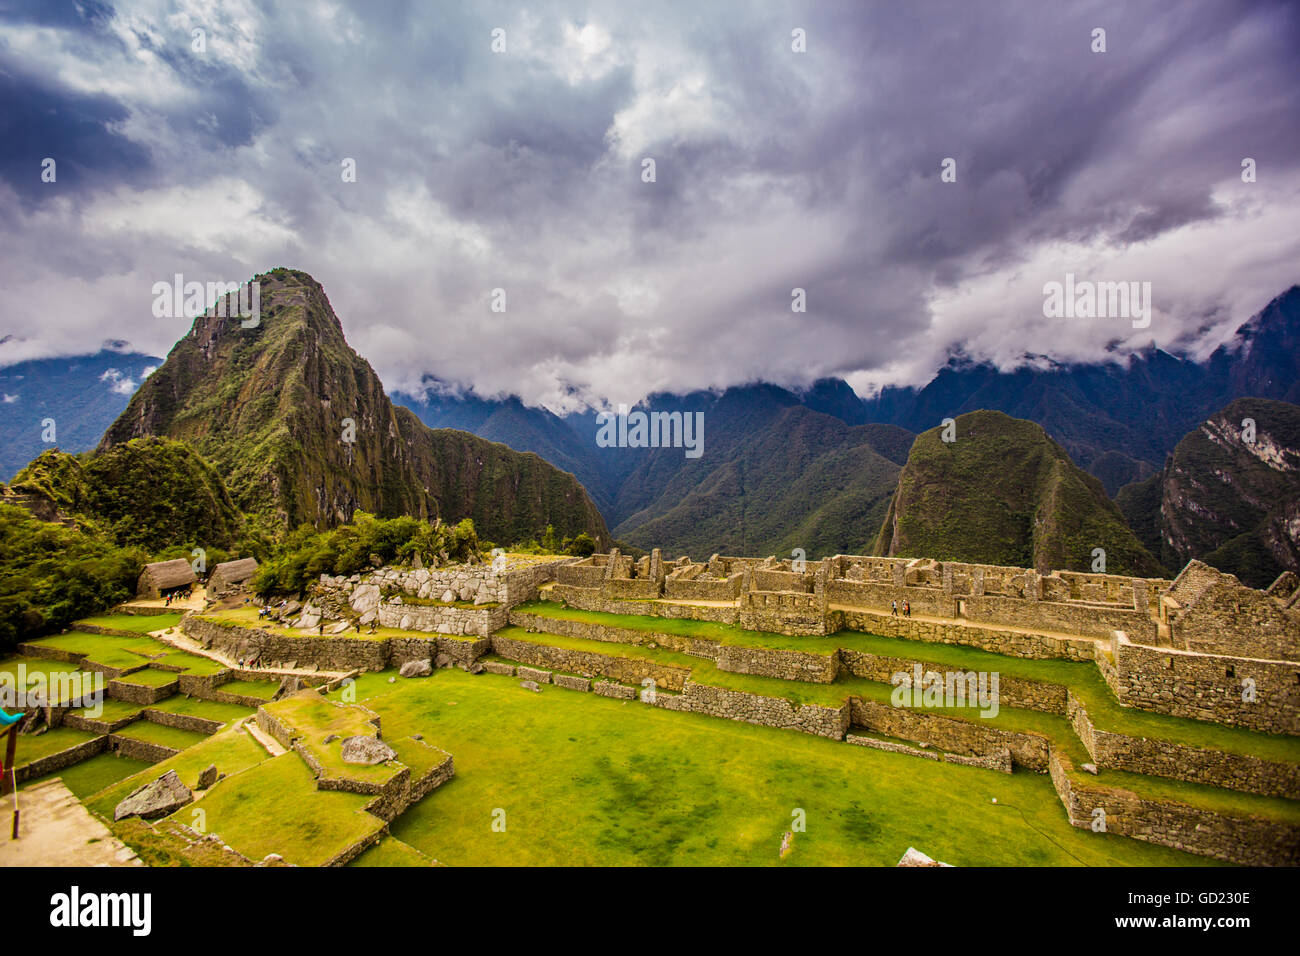 Ruines Incas de Machu Picchu, Site du patrimoine mondial de l'UNESCO, la Vallée Sacrée, le Pérou, Amérique du Sud Banque D'Images